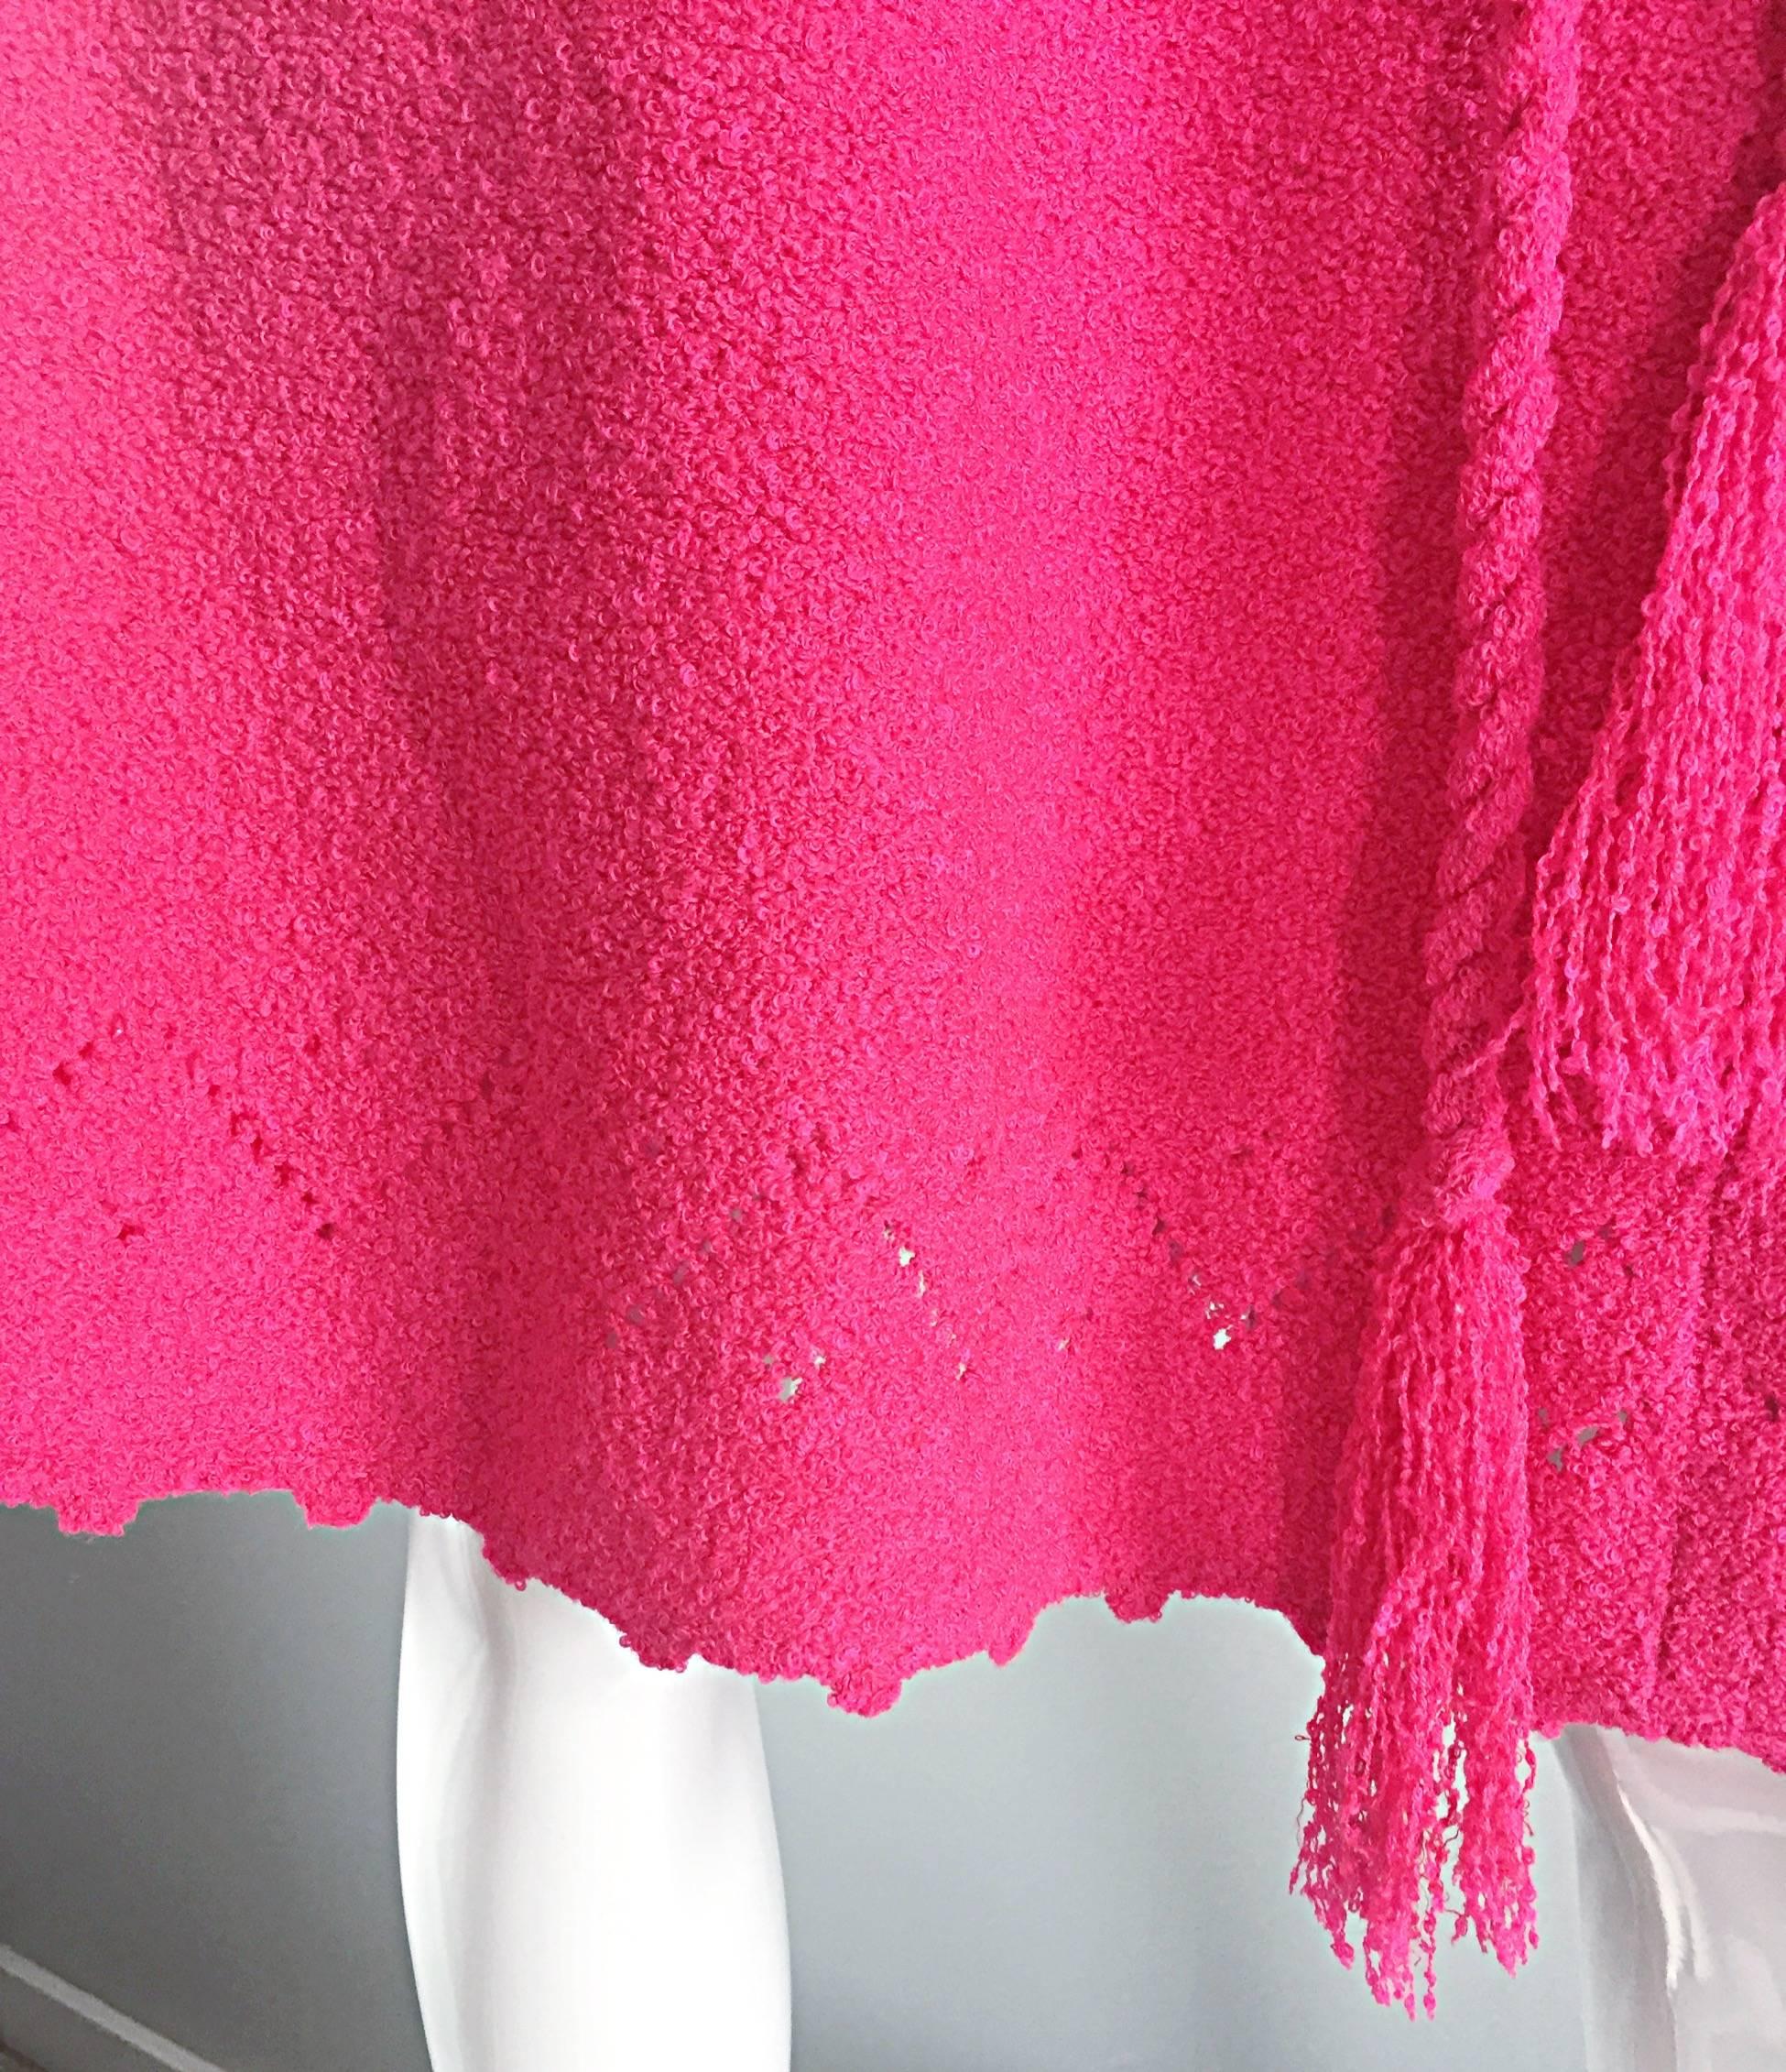 Women's 1960s St. John Hot Pink Crochet Knit A - Line 60s Vintage Dress w/ Tassel Belt